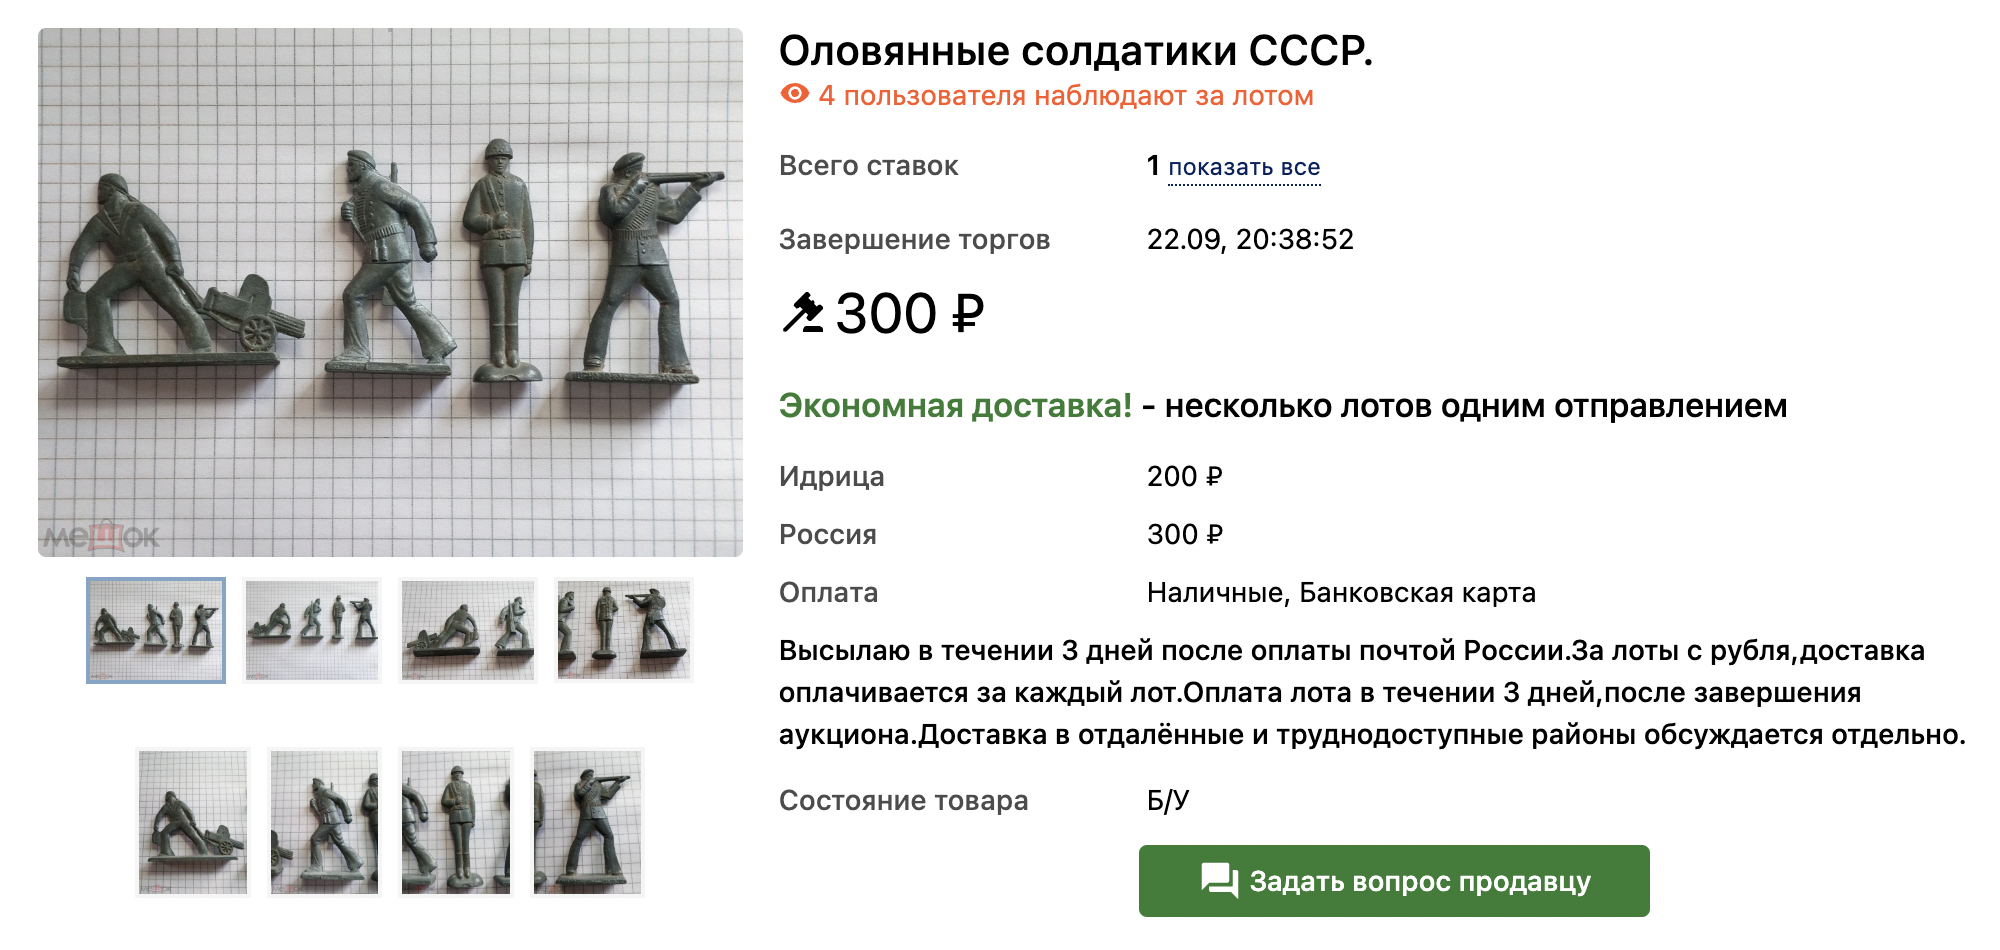 Такого же солдатика на аукционе «Мешок» продают по цене от 300 ₽ за штуку. Лот хотели бы купить уже четыре человека. Источник: meshok.net